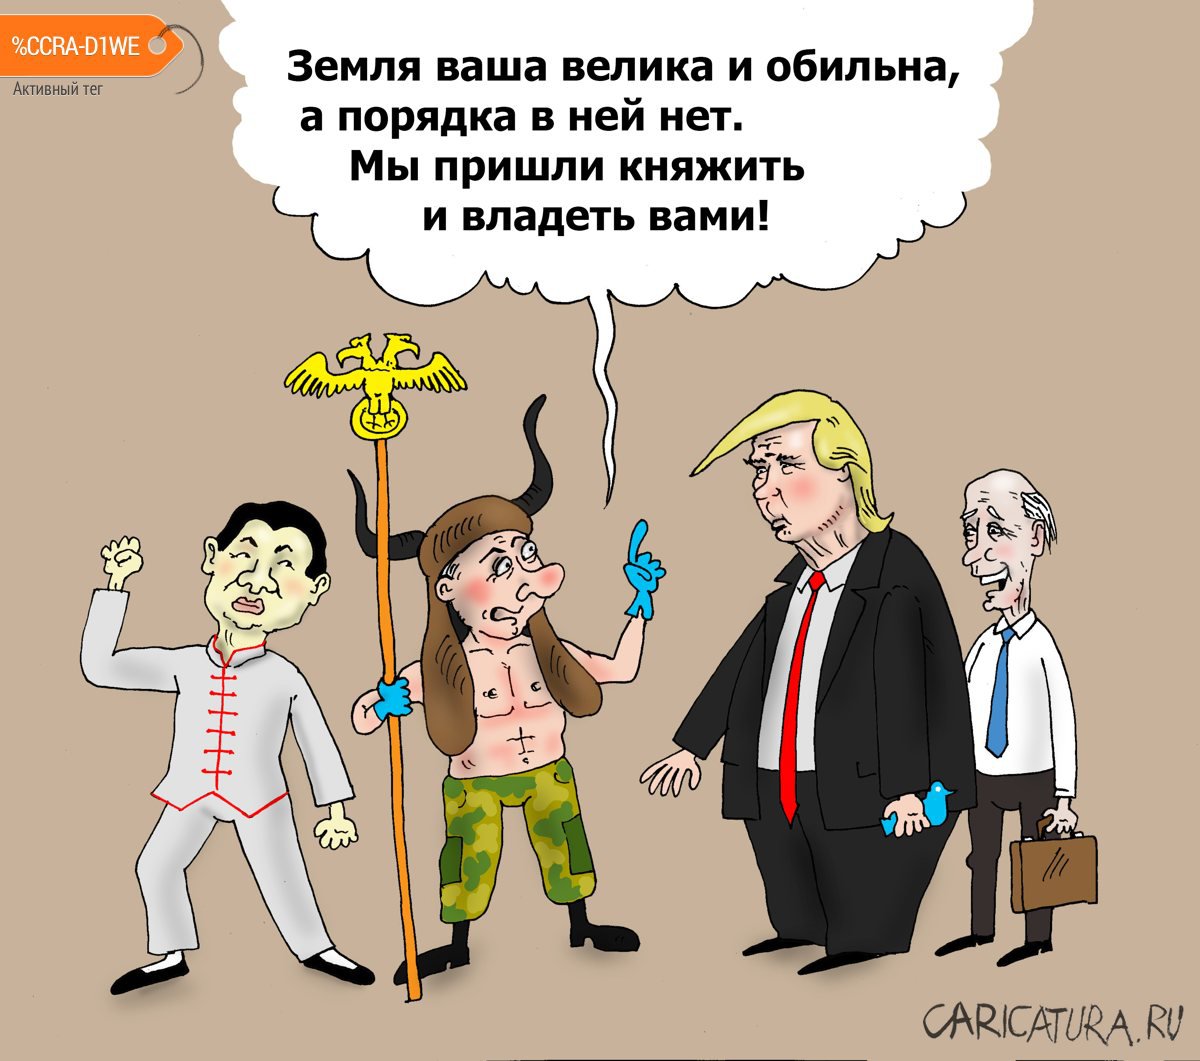 Карикатура "Варяги", Валерий Тарасенко